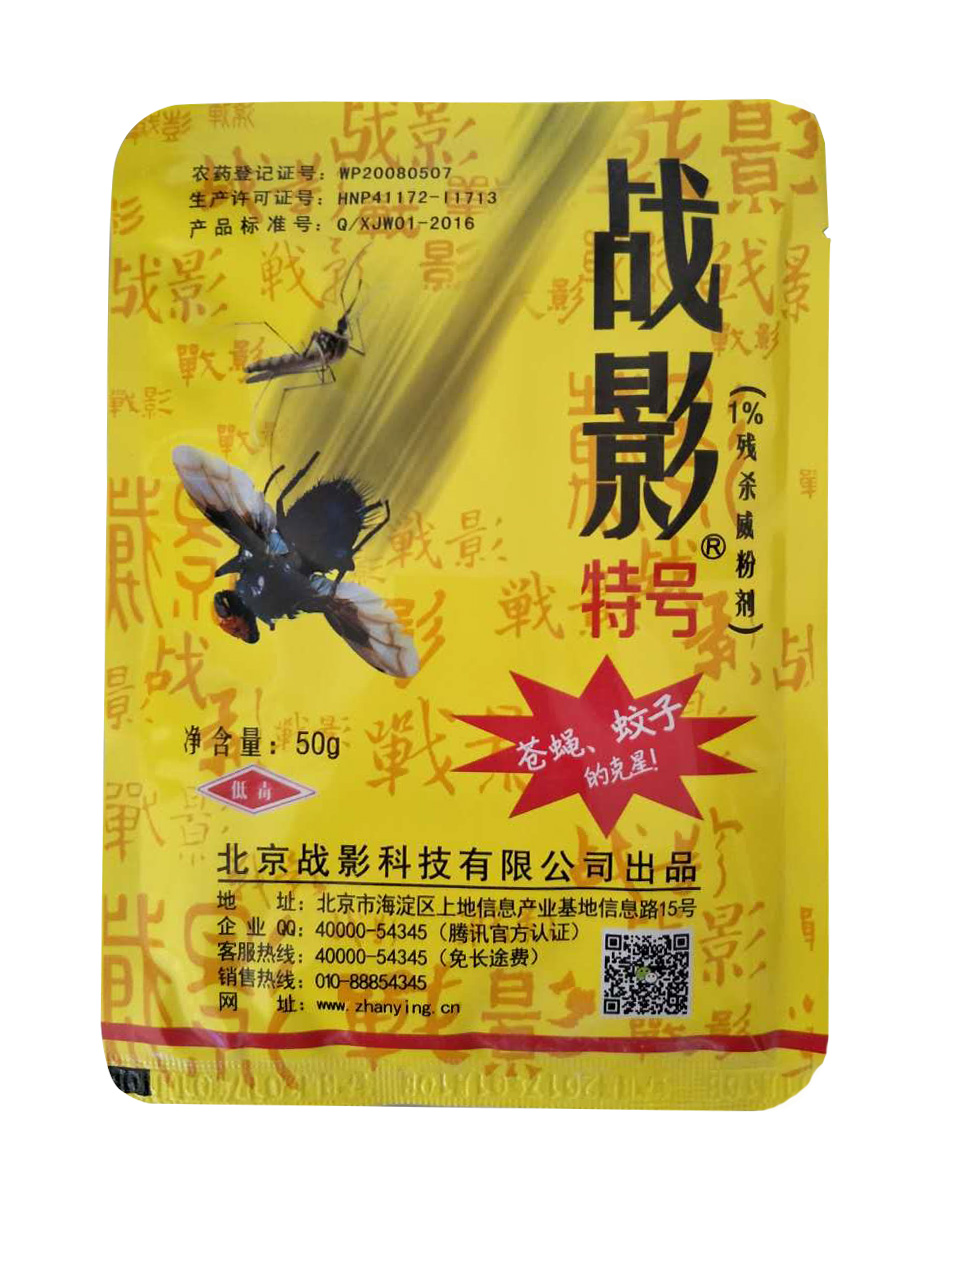 战影特号—蚊蝇的克星 战影新品 灭蚊蝇新配方 苍蝇药 灭蝇子的好方法